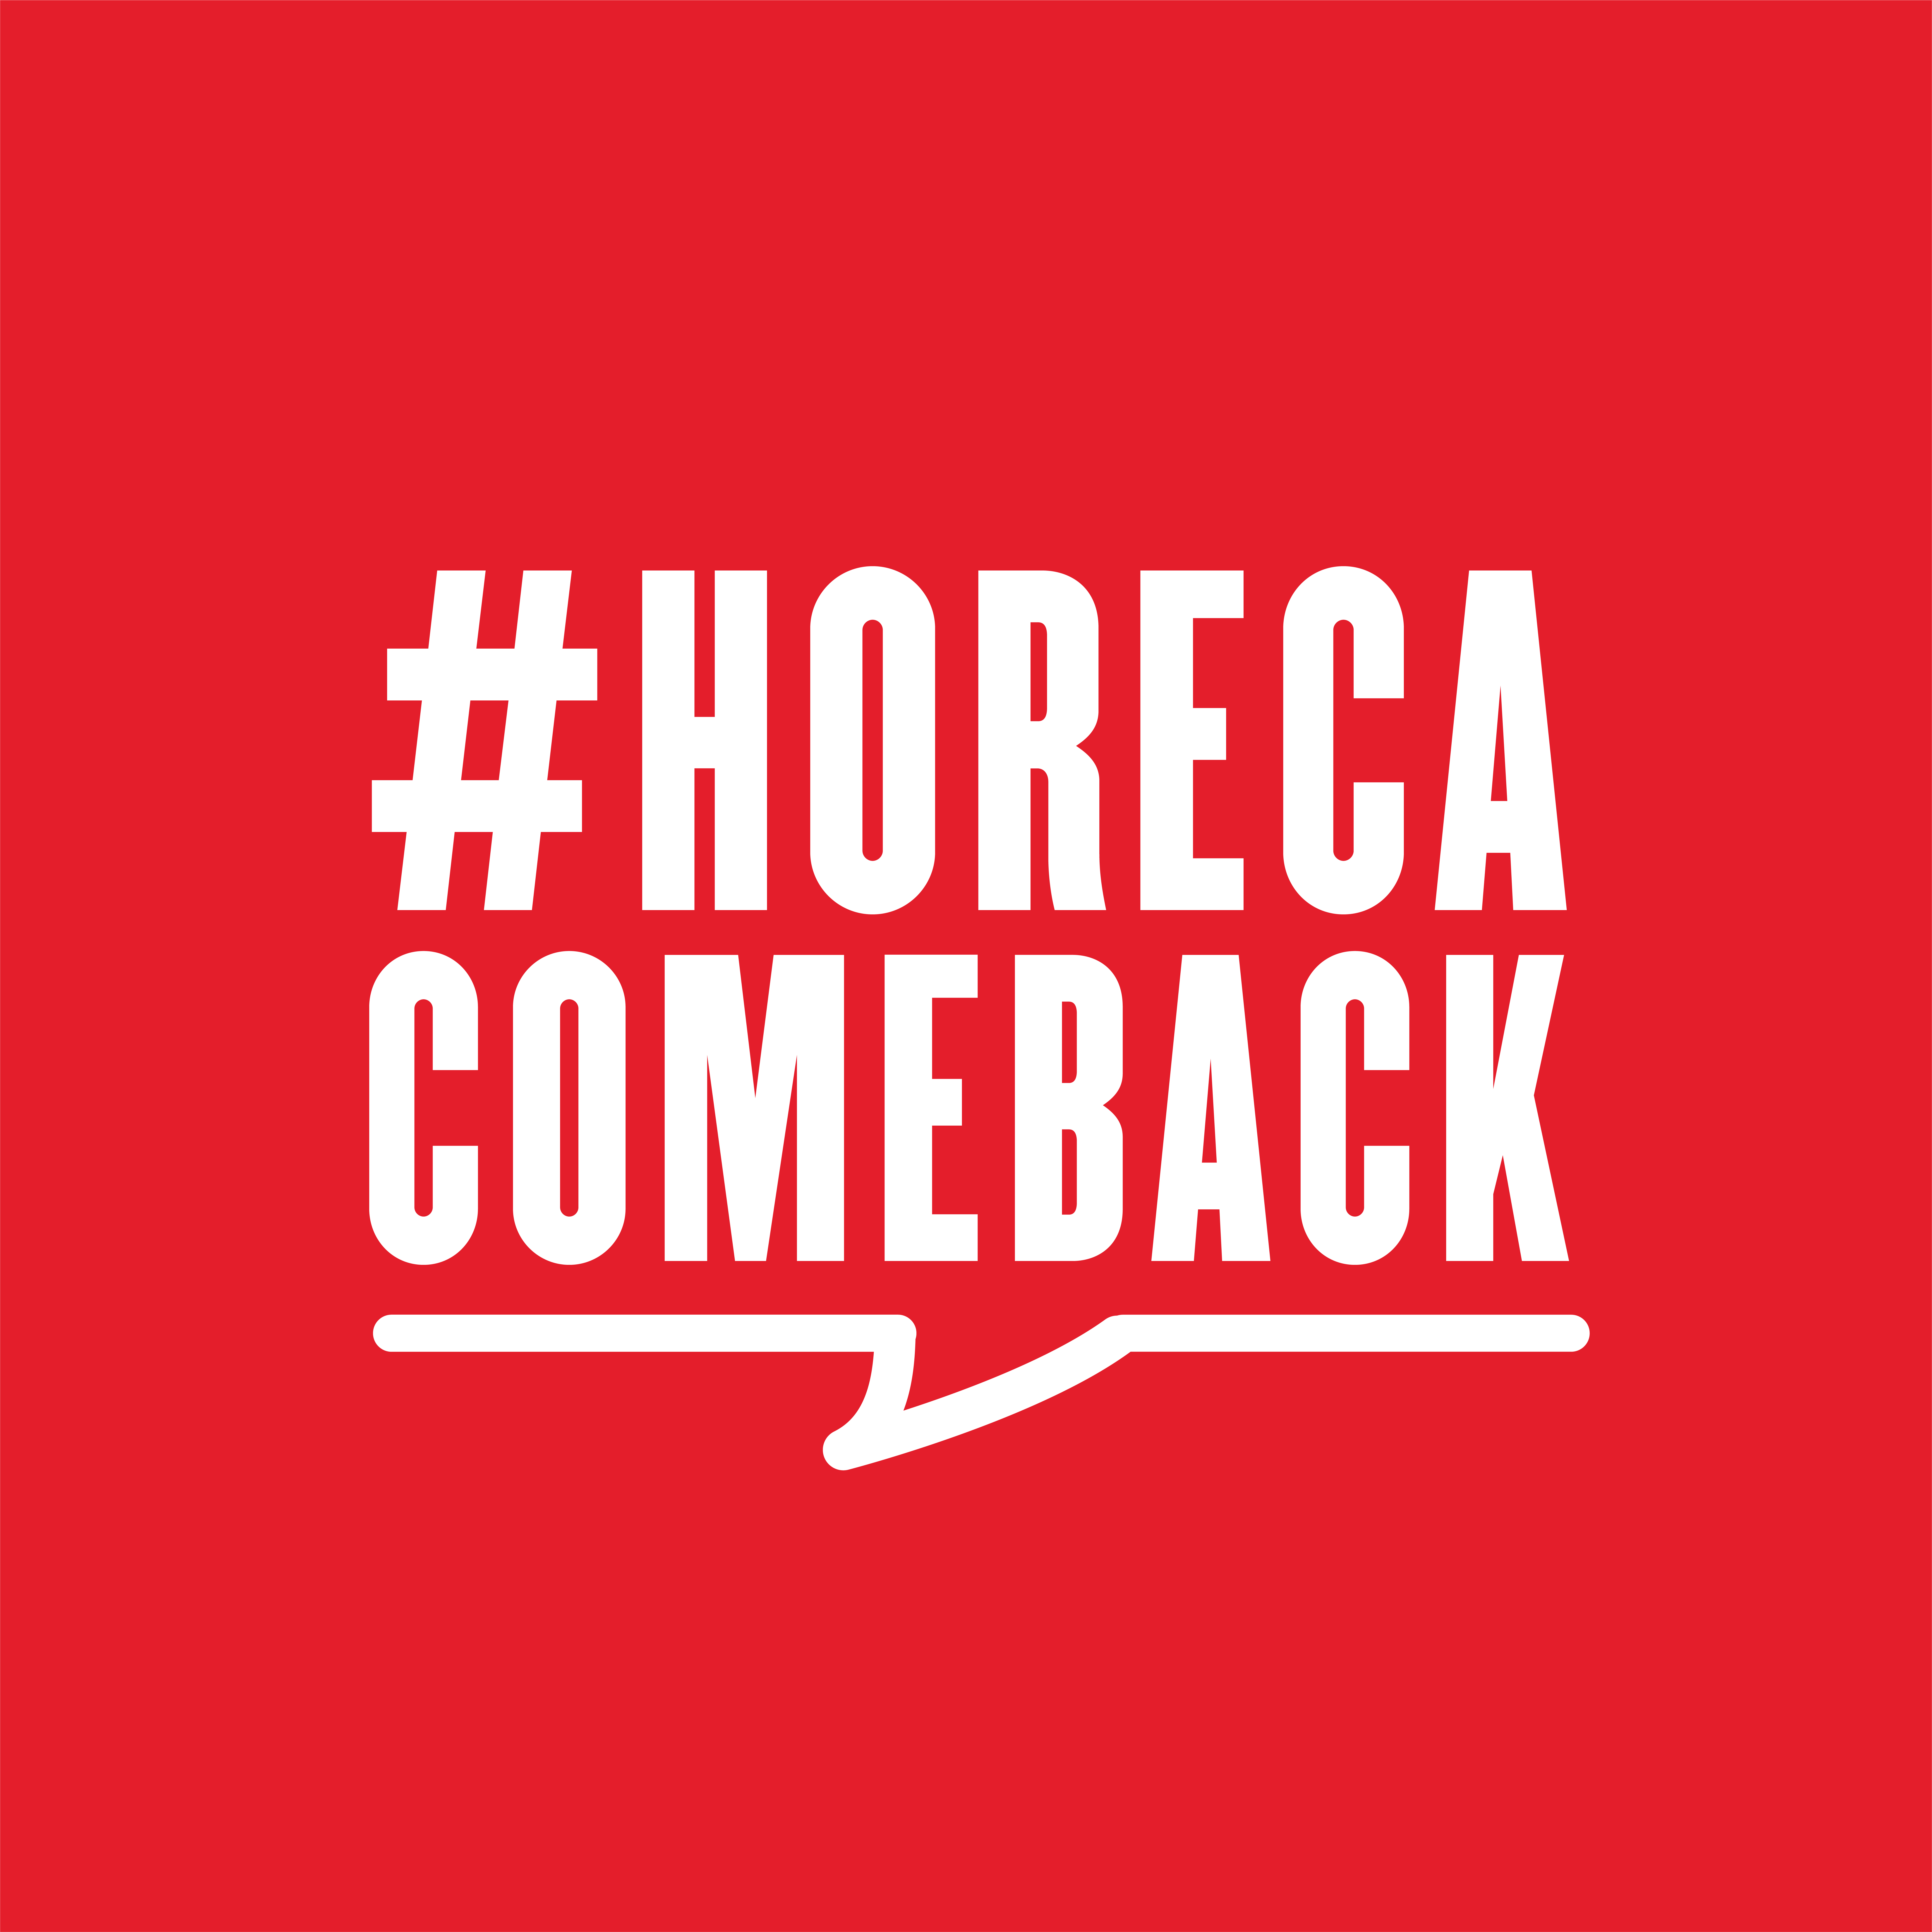 #Horeca Comeback